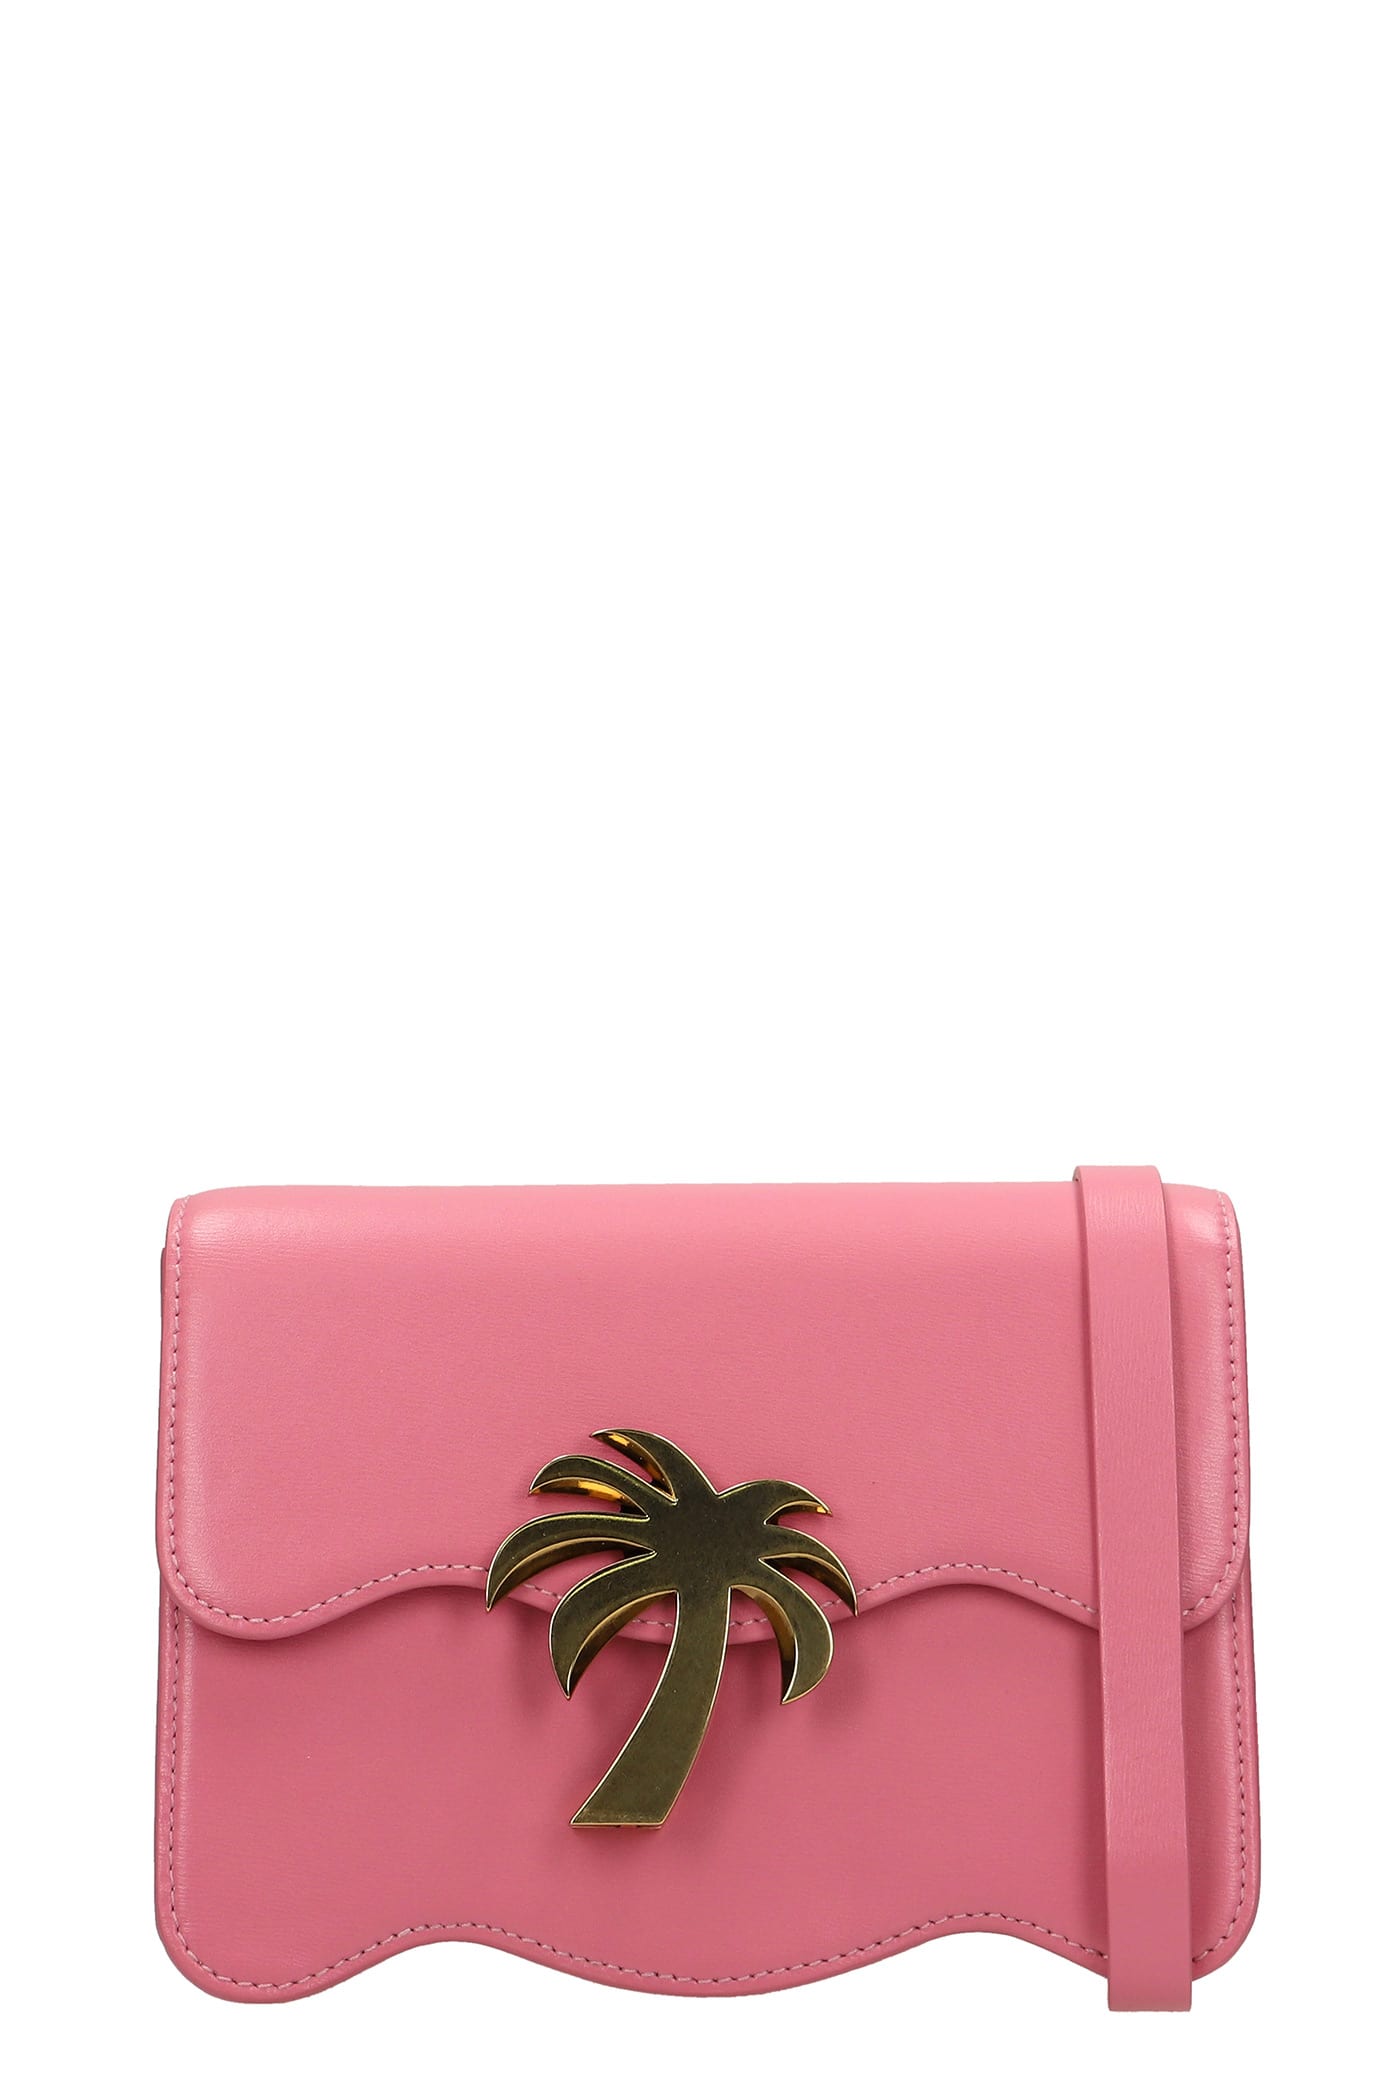 Palm Angels Shoulder Bag In Rose-pink Leather